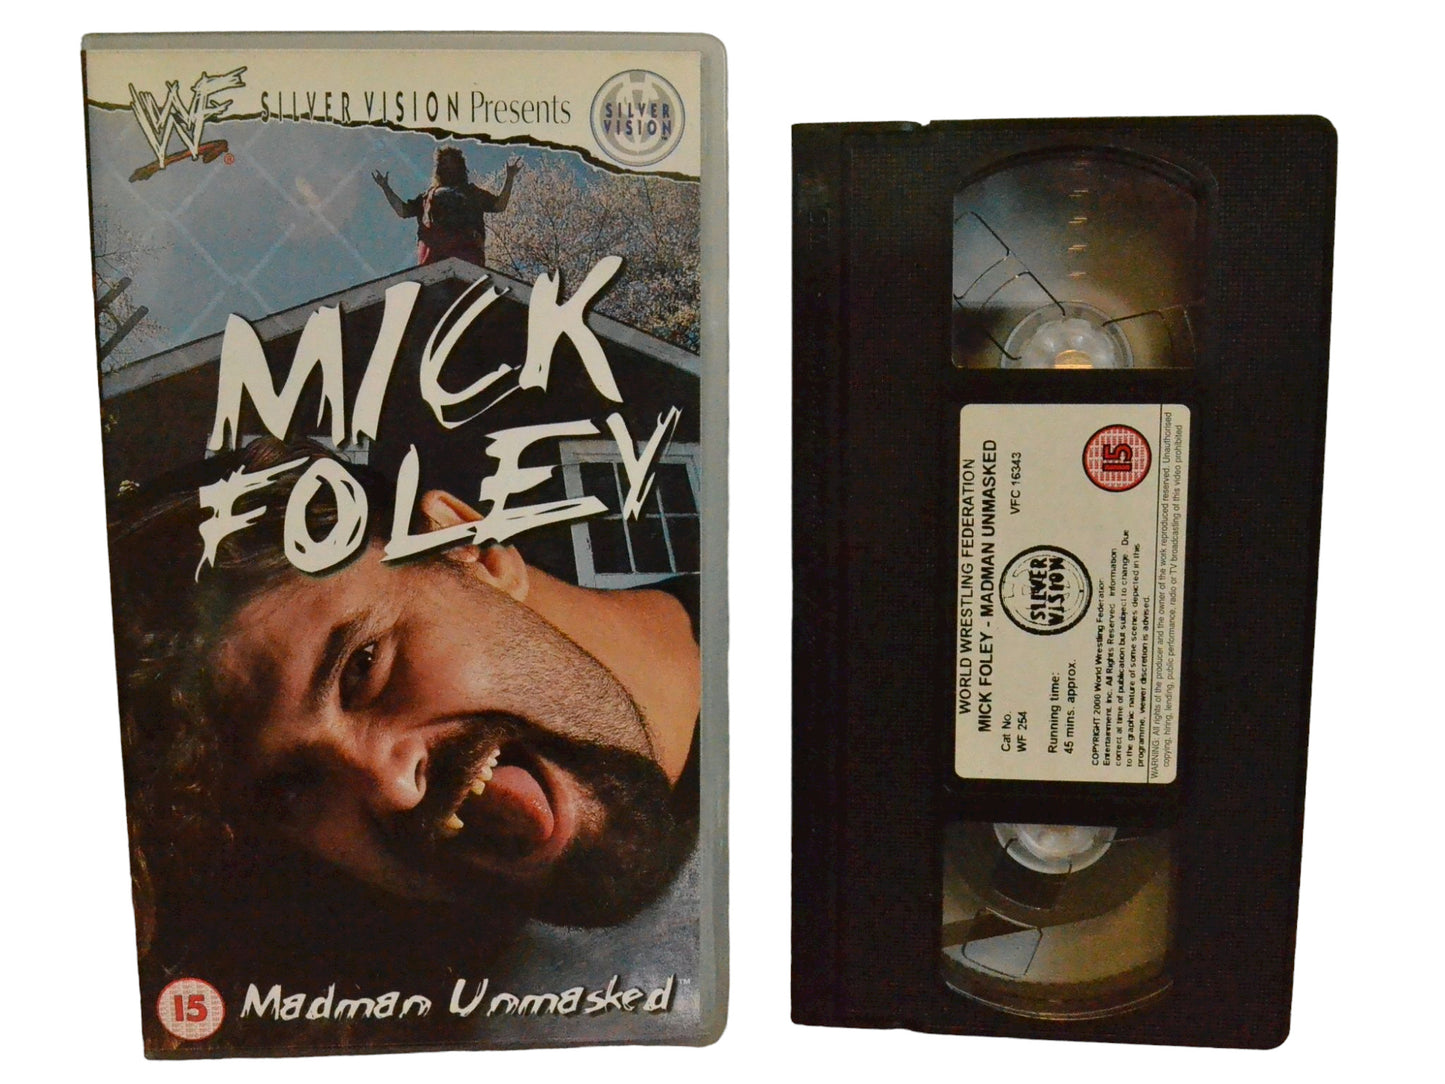 WWF: Mick Foley - Madman Unmasked - Mick Foley - World Wrestling Federation Home Video - Wrestling - PAL - VHS-